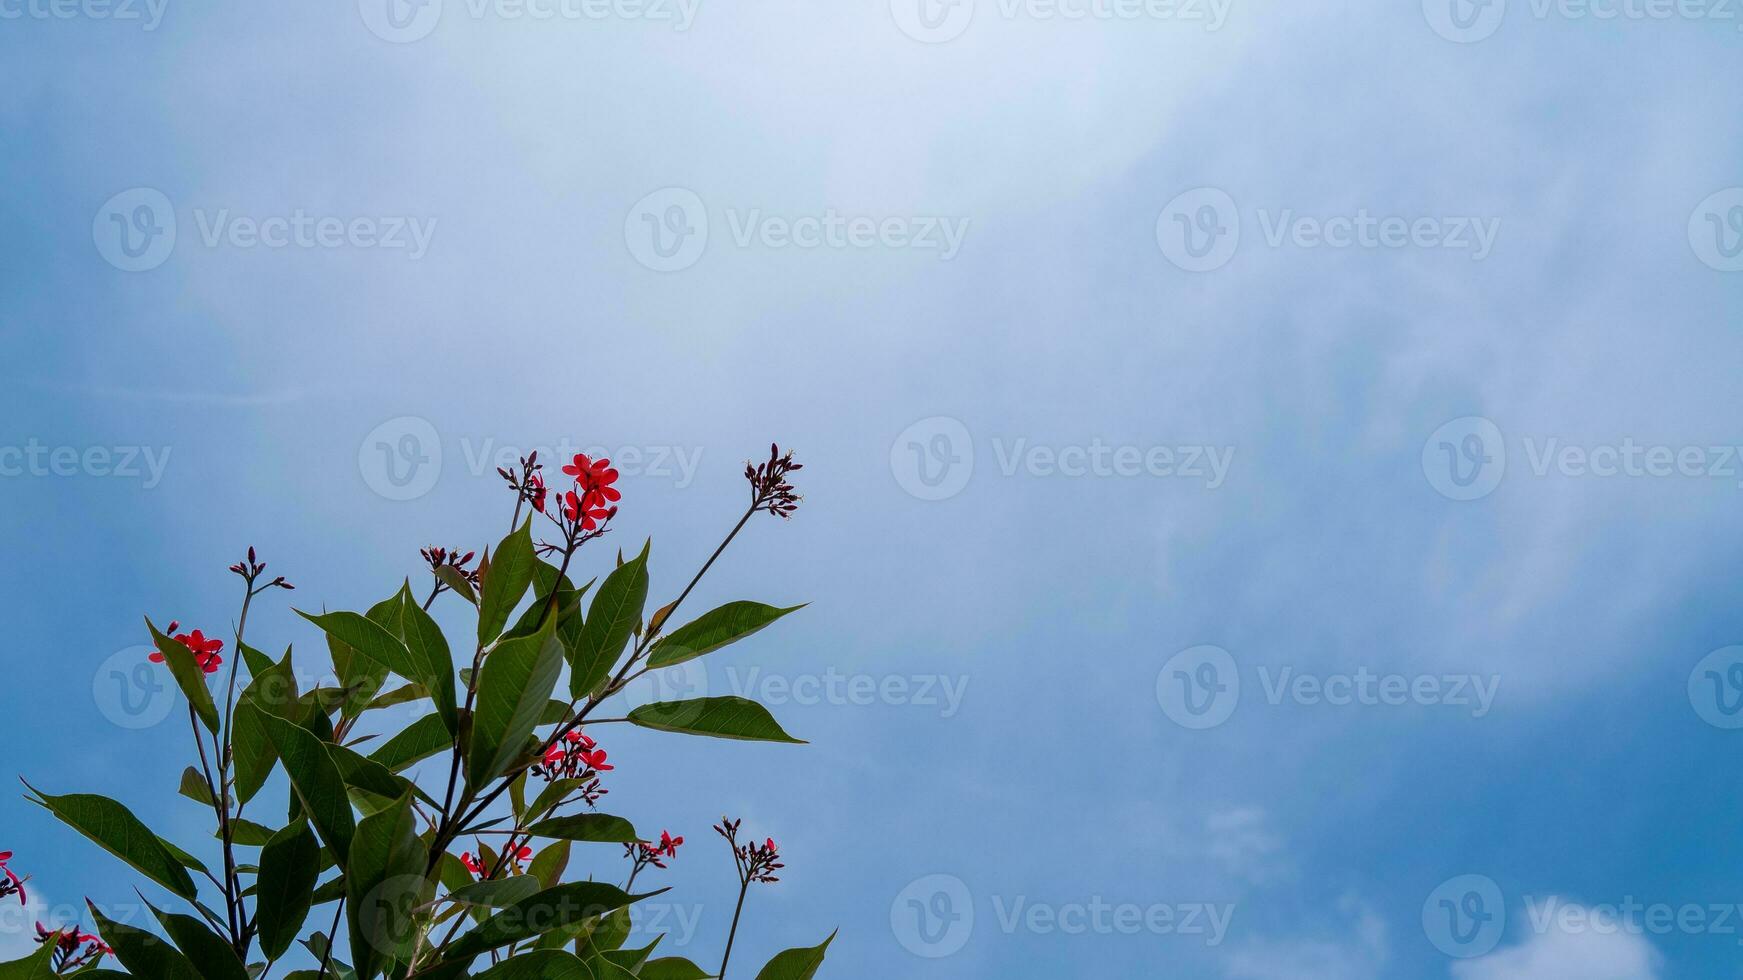 a adorável Asoka Flor é capturado contra uma Claro azul céu. foto